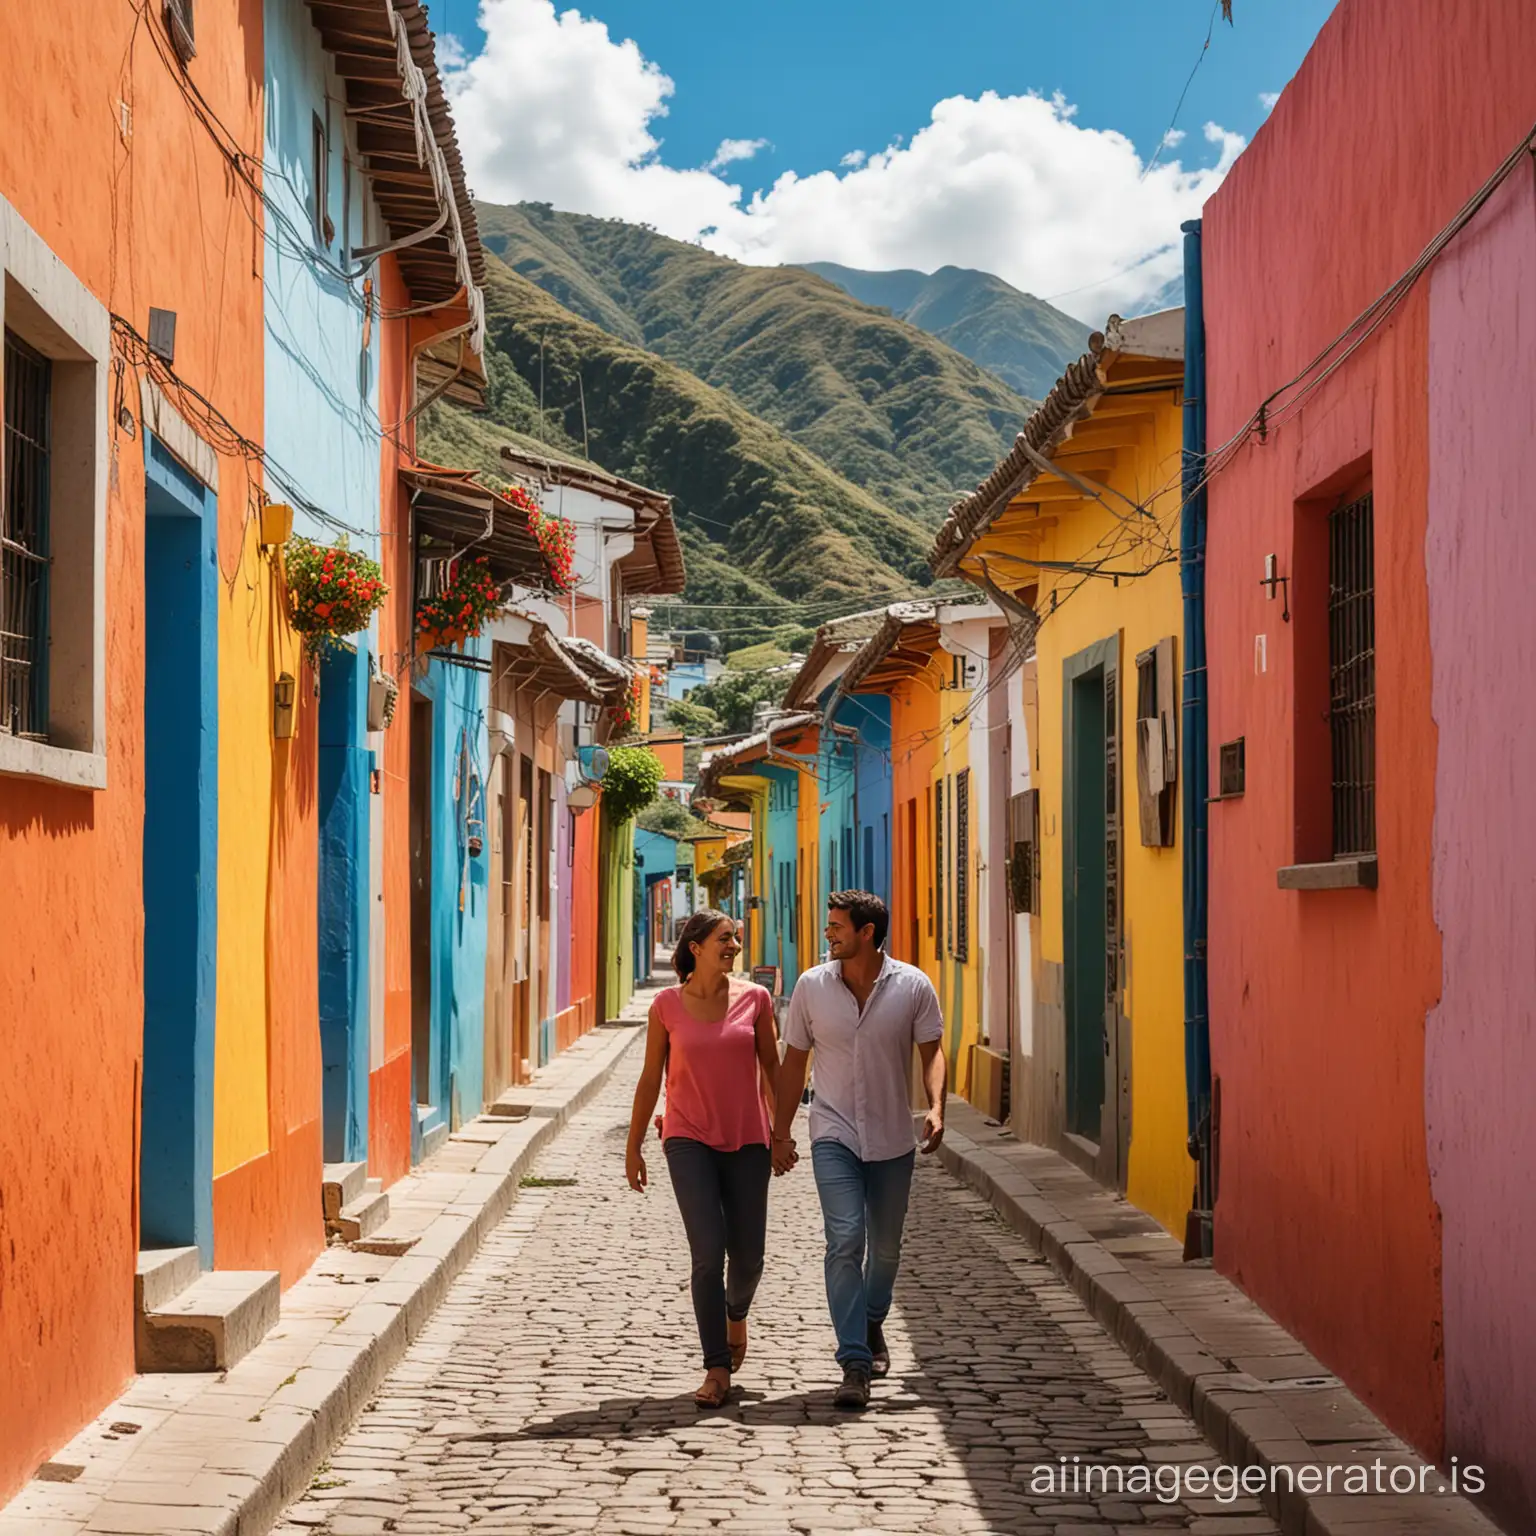 Vibrant-Stroll-Couple-Exploring-a-Colorful-Alley-in-Ecuadorian-Village